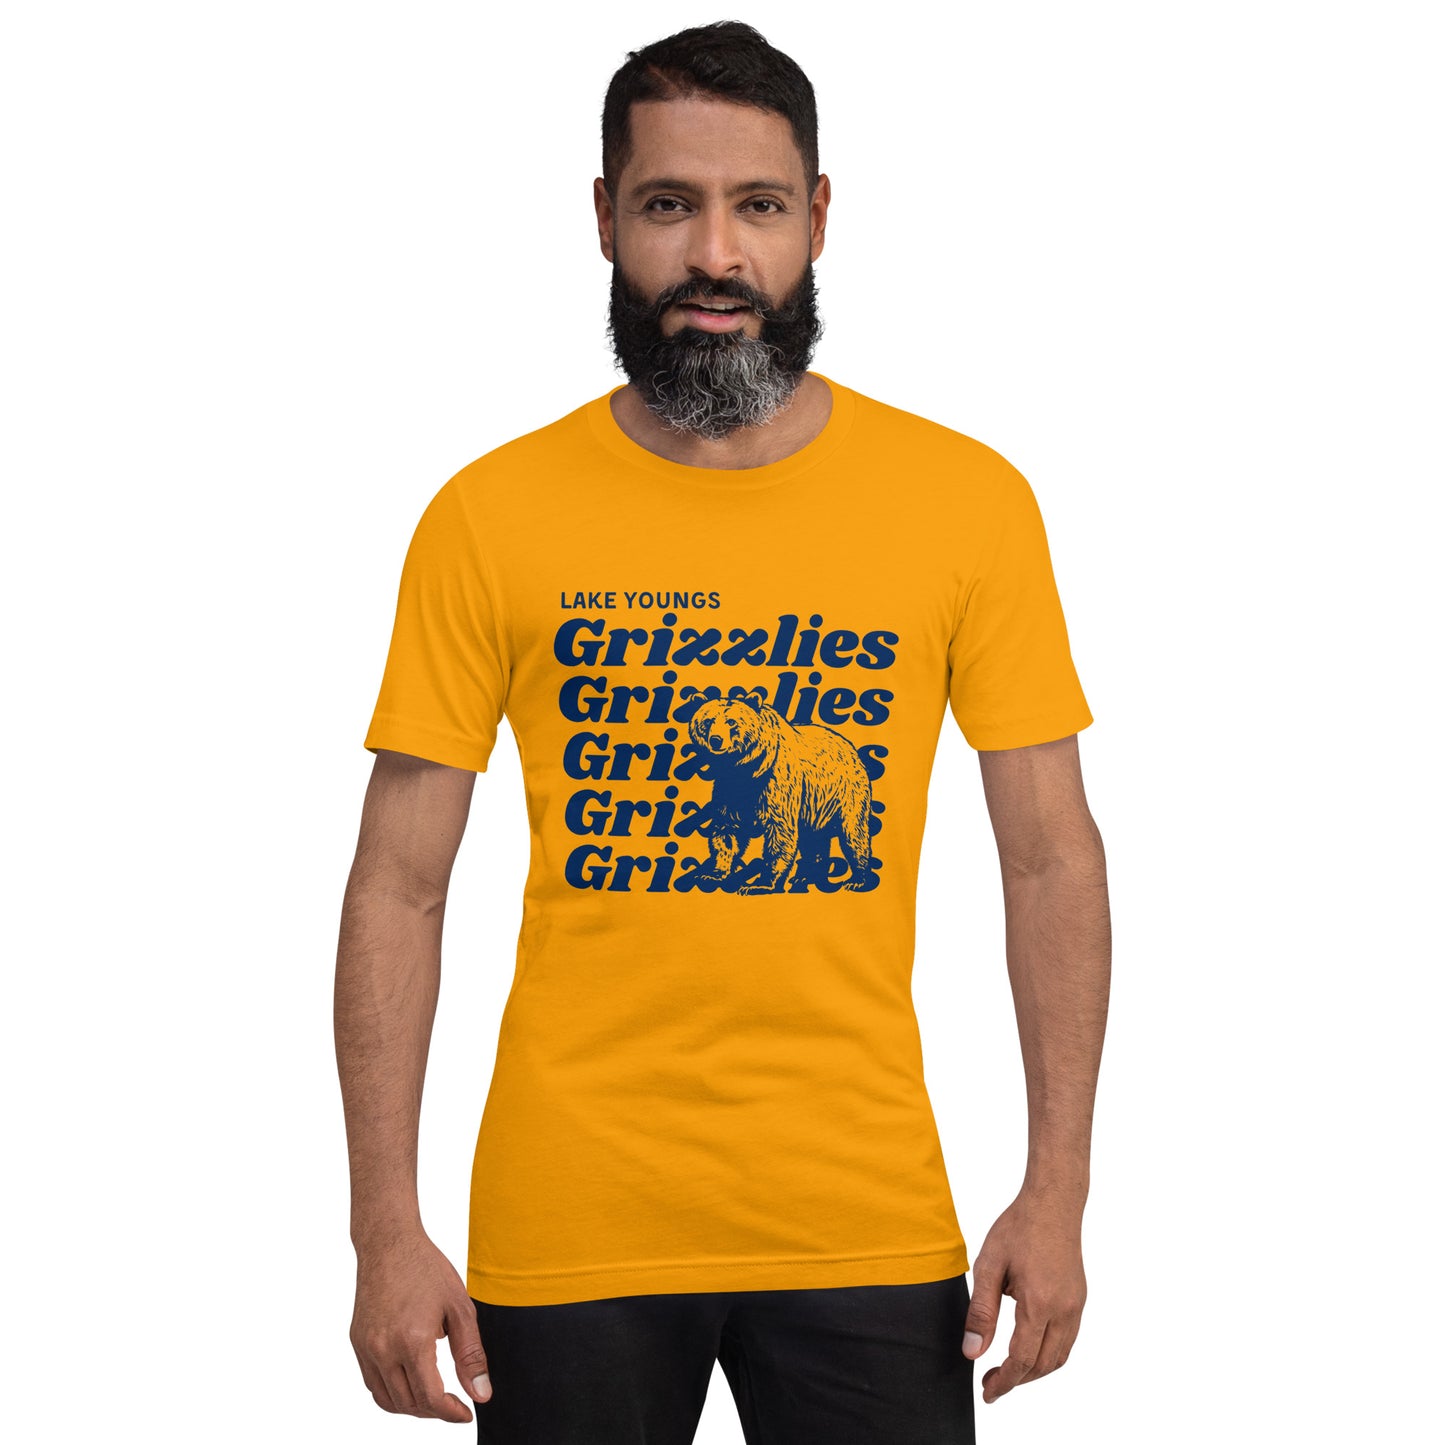 Navy Blue “Grizzlies” Adult Short Sleeve T-Shirt